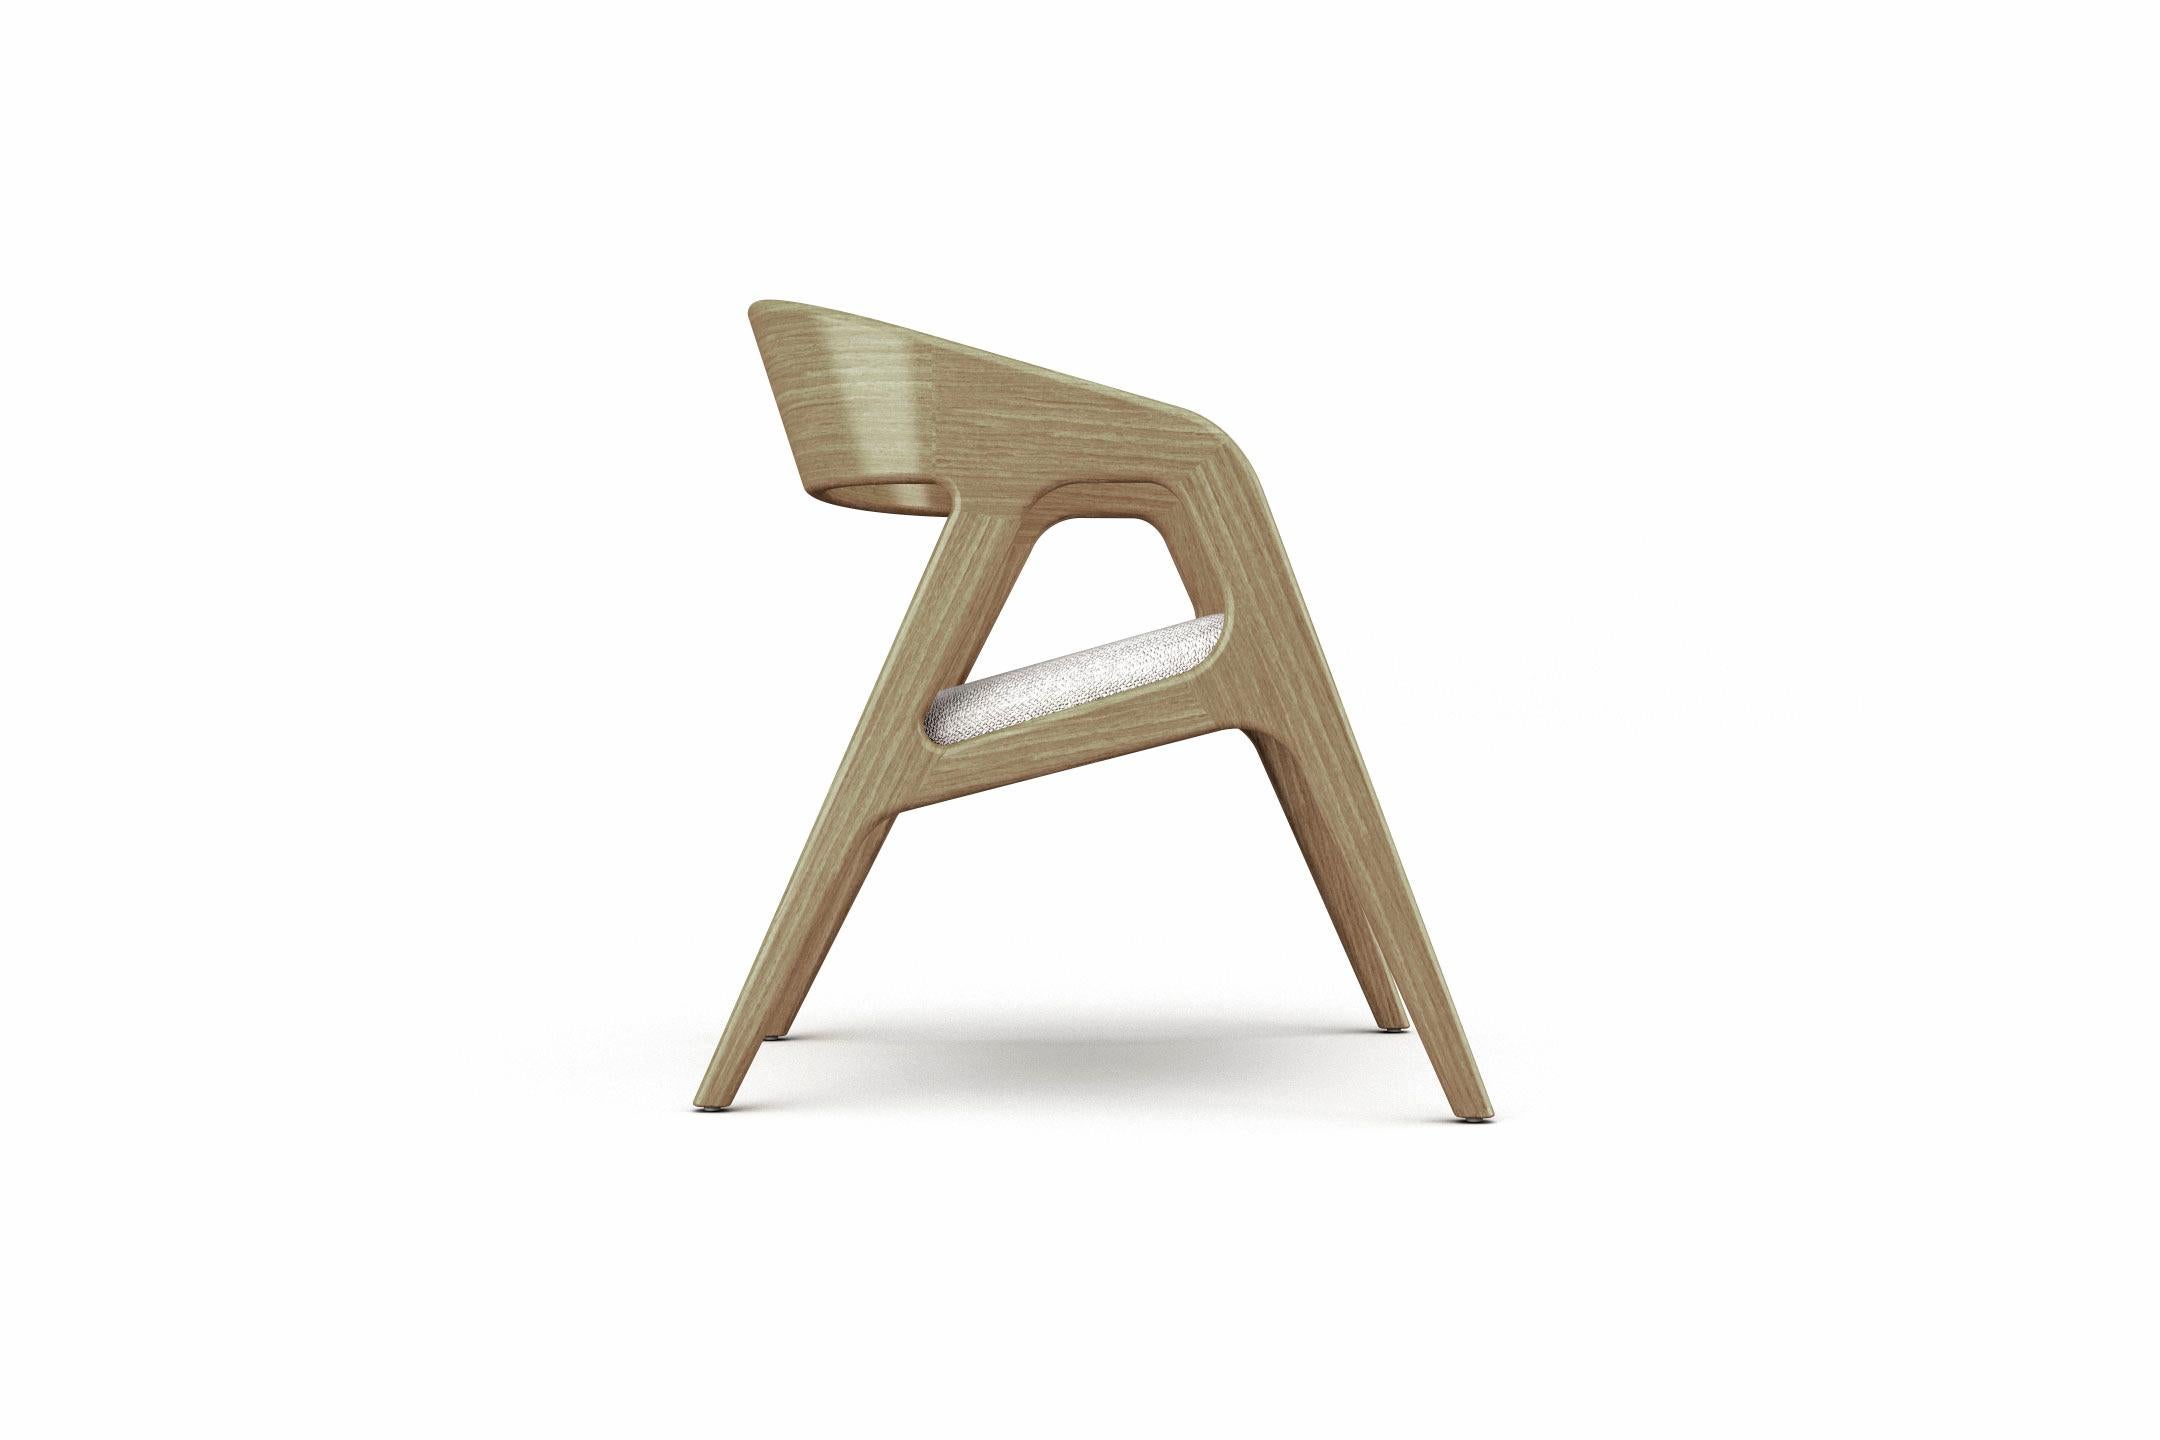 Le fauteuil design Vertex évoque l'harmonie géométrique sous chacun de ses angles, attirant le regard dans ses anfractuosités capricieuses. Sa structure est façonnée en bois massif courbé avec une assise rembourrée qui peut être personnalisée sur